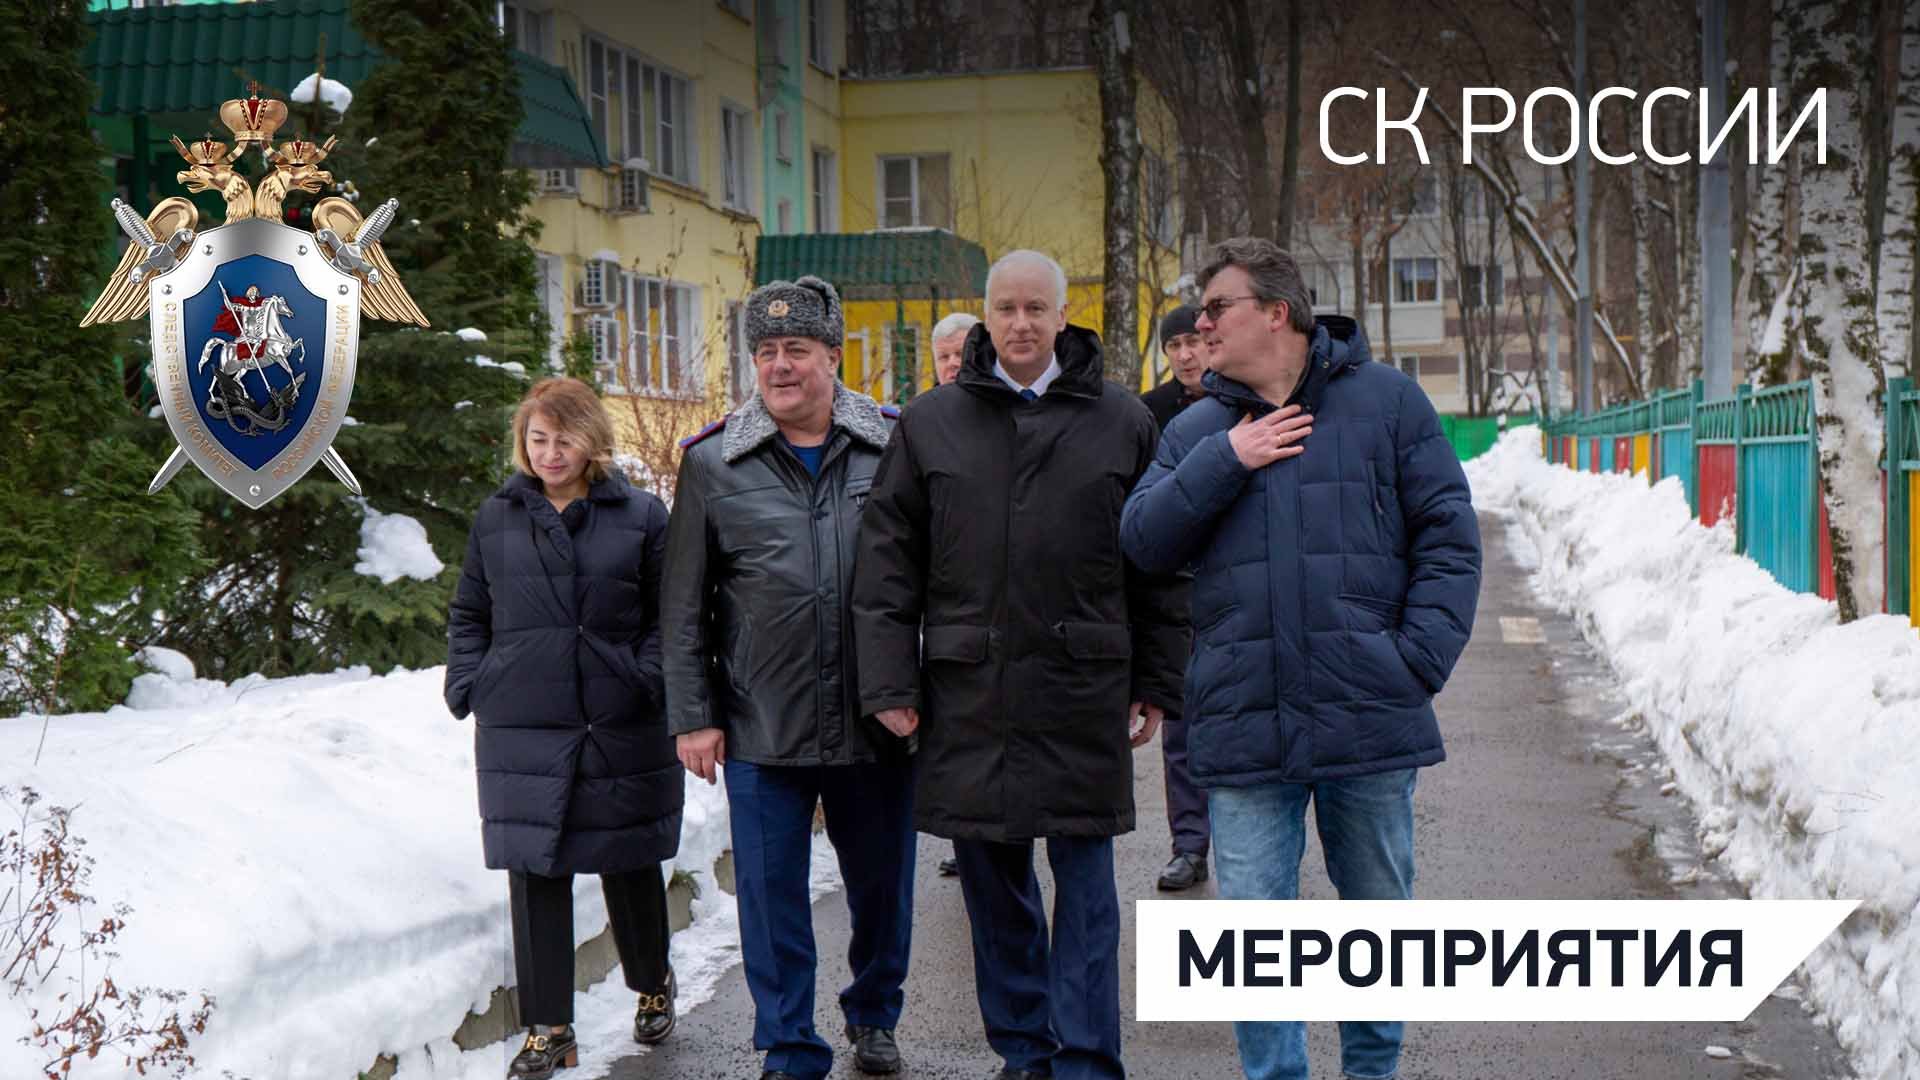 Председатель СК России посетил Центр содействия семейному воспитанию «Сколковский»